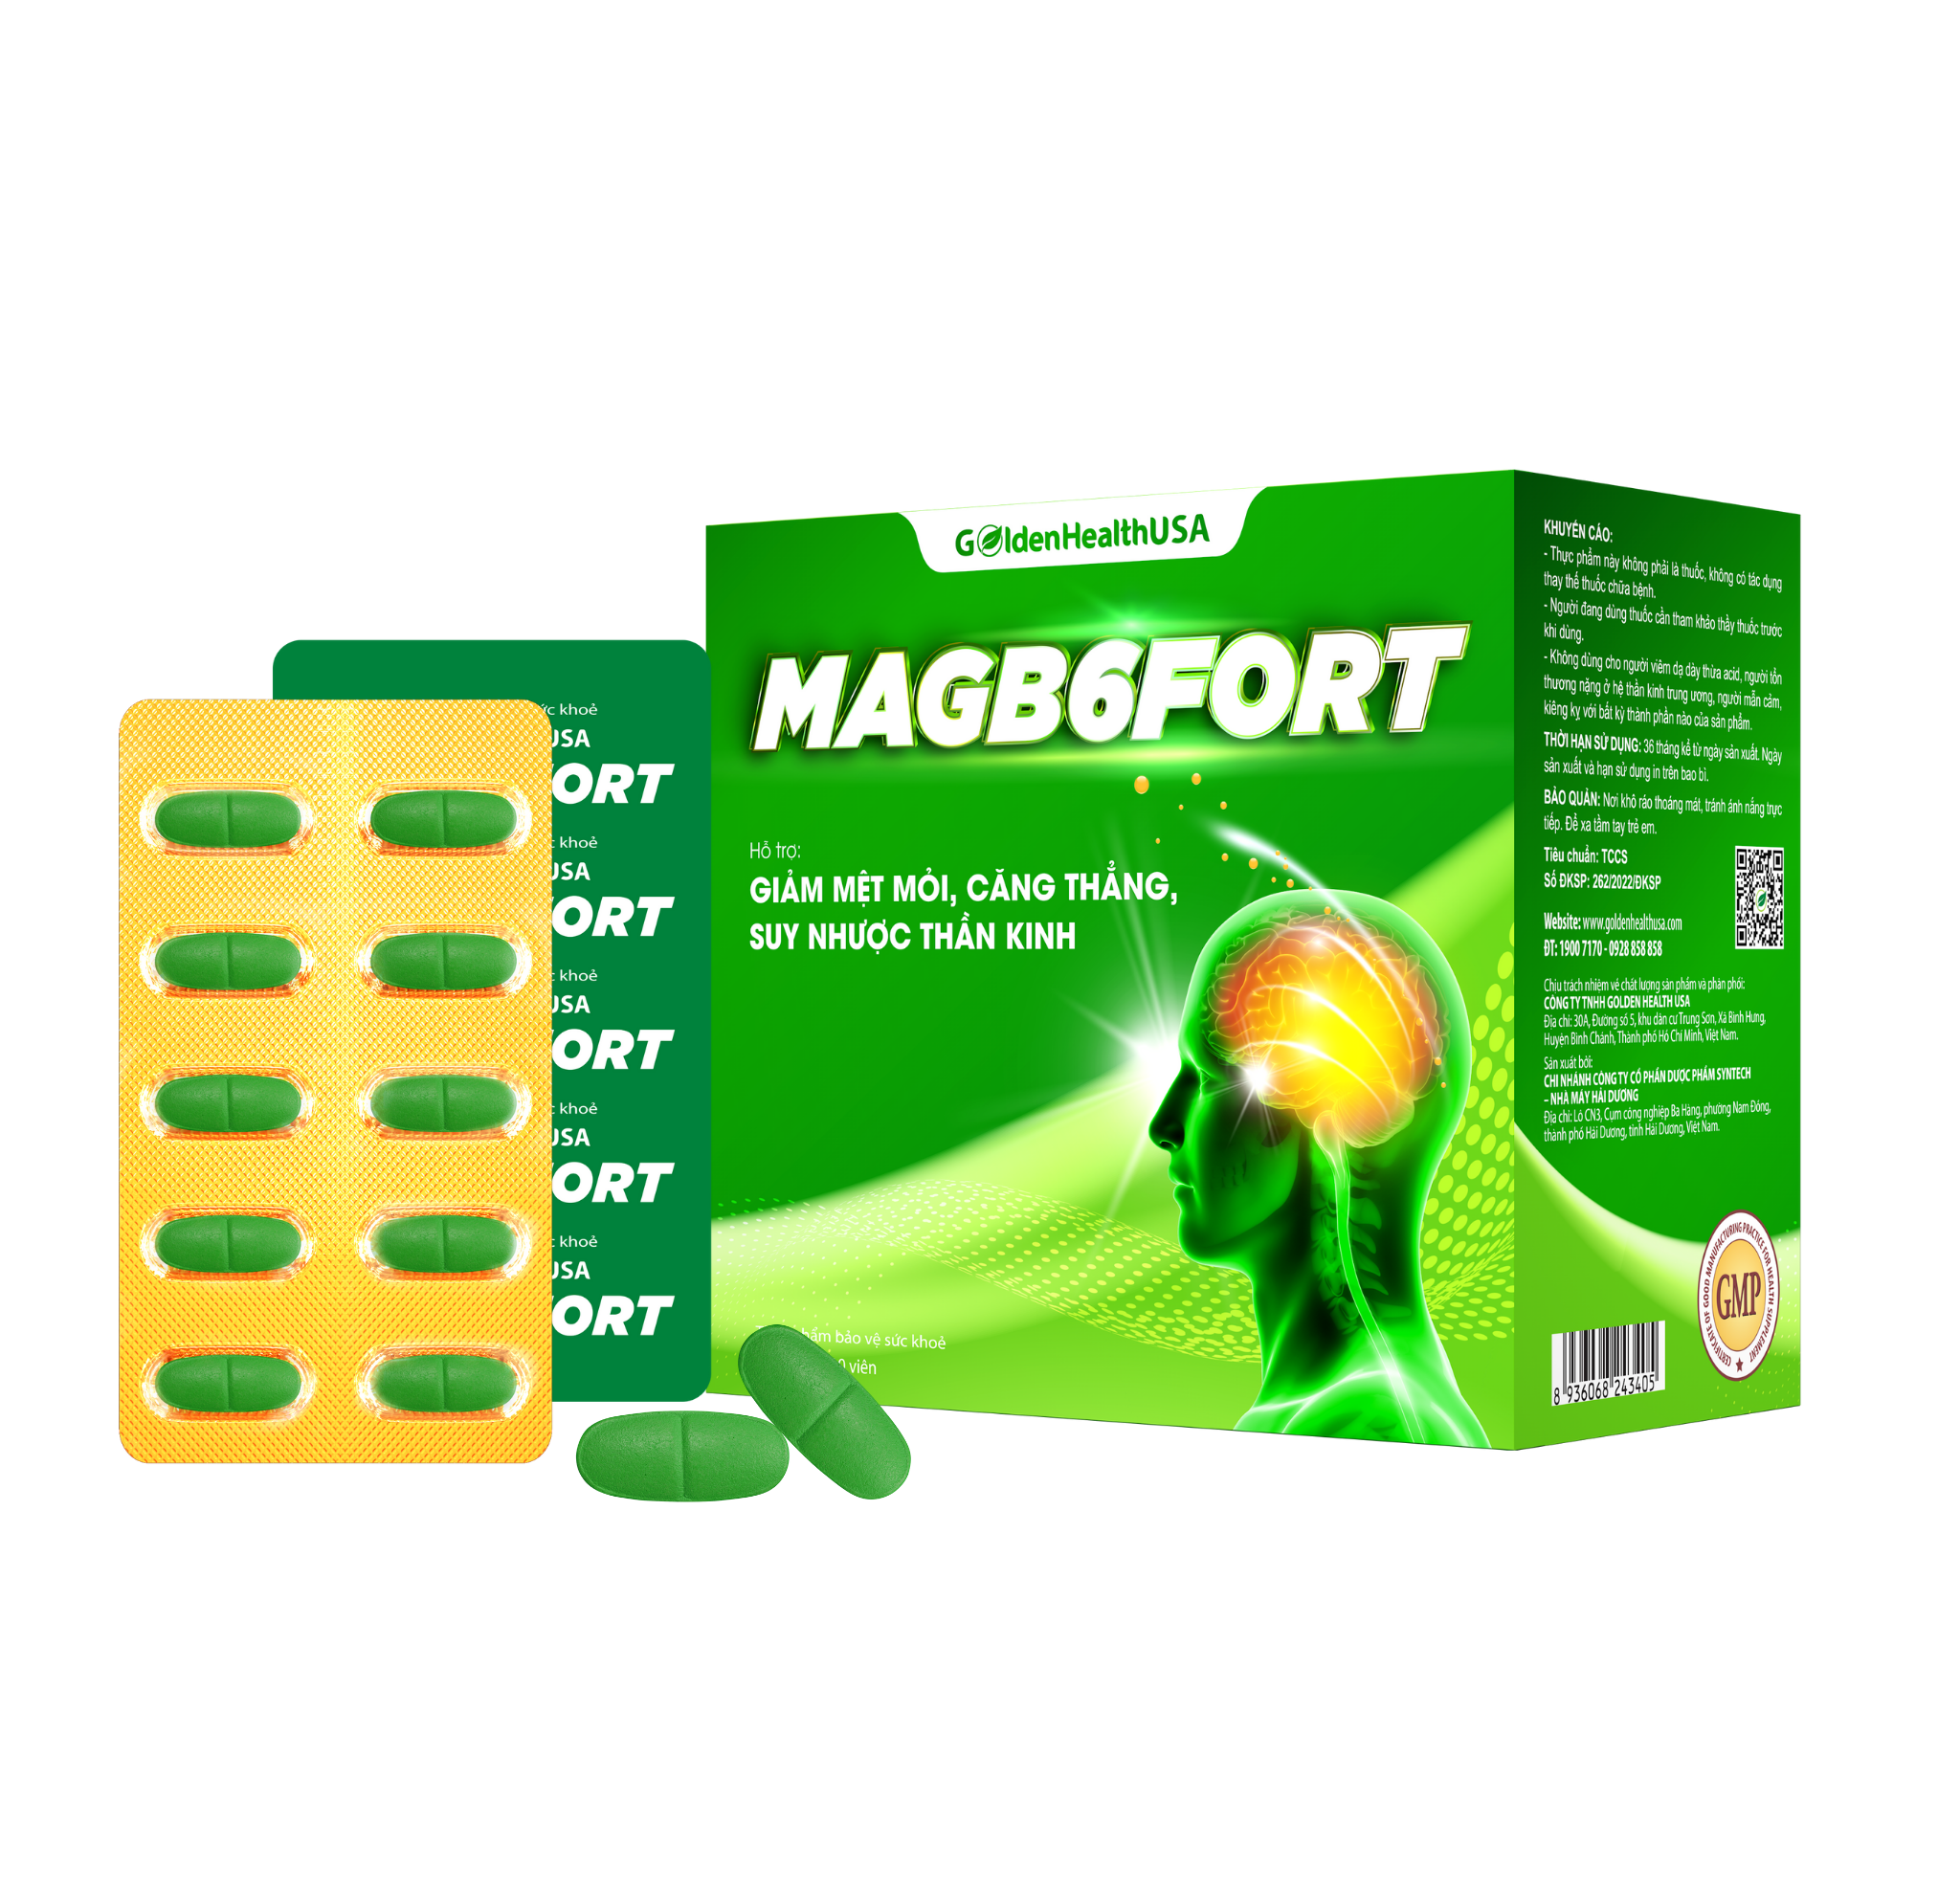 MAGB6FORT- Hỗ trợ giảm mệt mỏi, căng thẳng, suy nhược thần kinh.